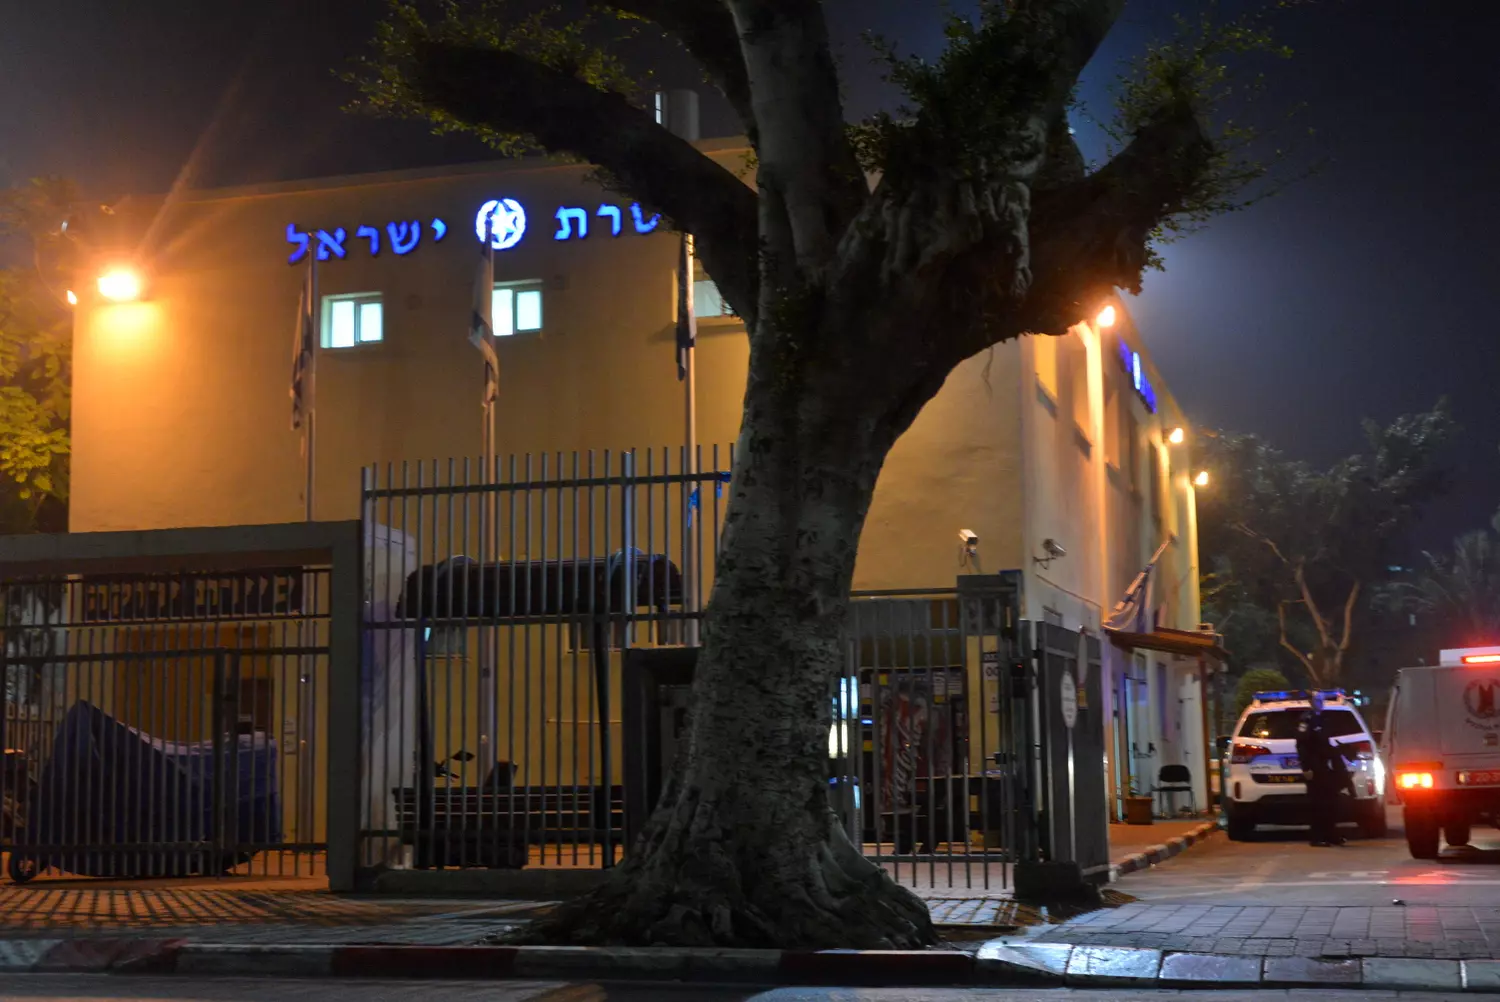 התינוקת פונתה במצב קשה לבית החולים. אזור התקיפה בדרום תל אביב, ליד גינת לוינסקי